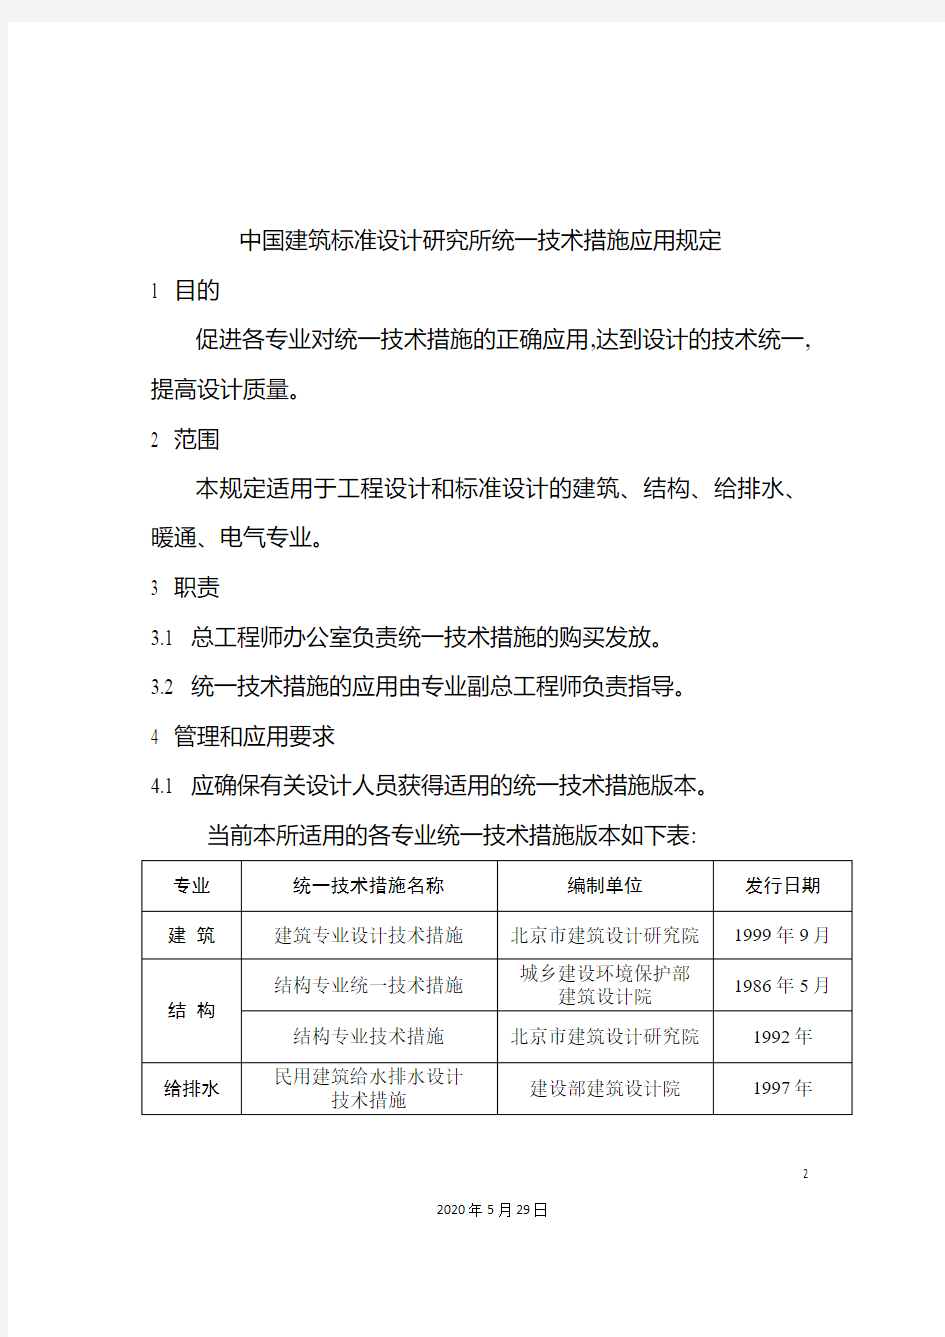 中国建筑标准设计研究所统一技术措施应用规定